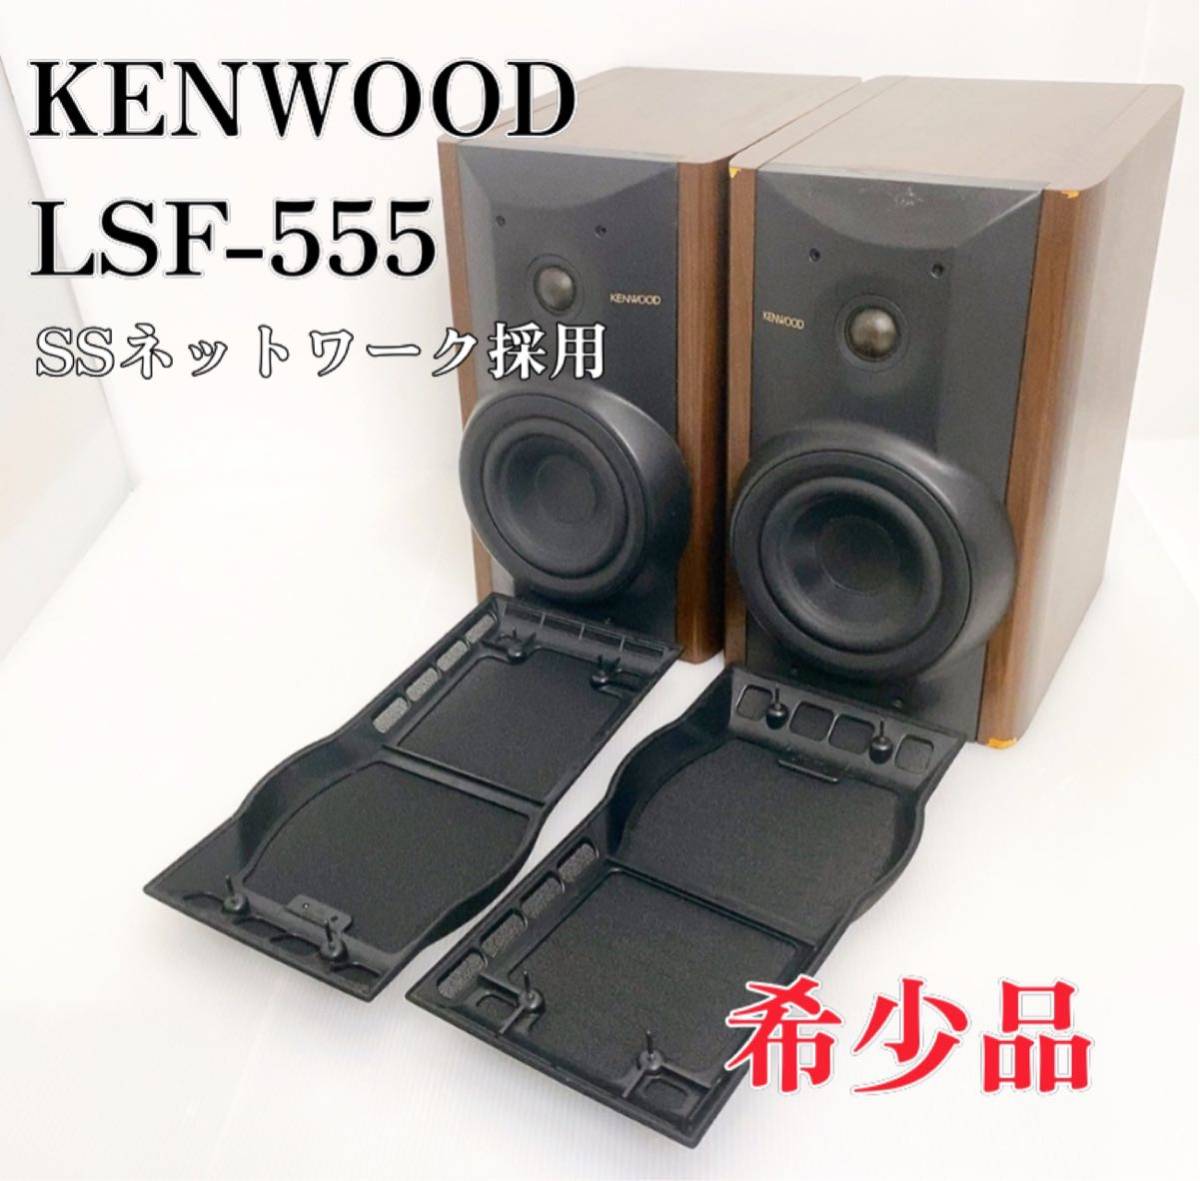 新着商品 【希少品】KENWOOD ケンウッド LSF-555 スピーカーシステム